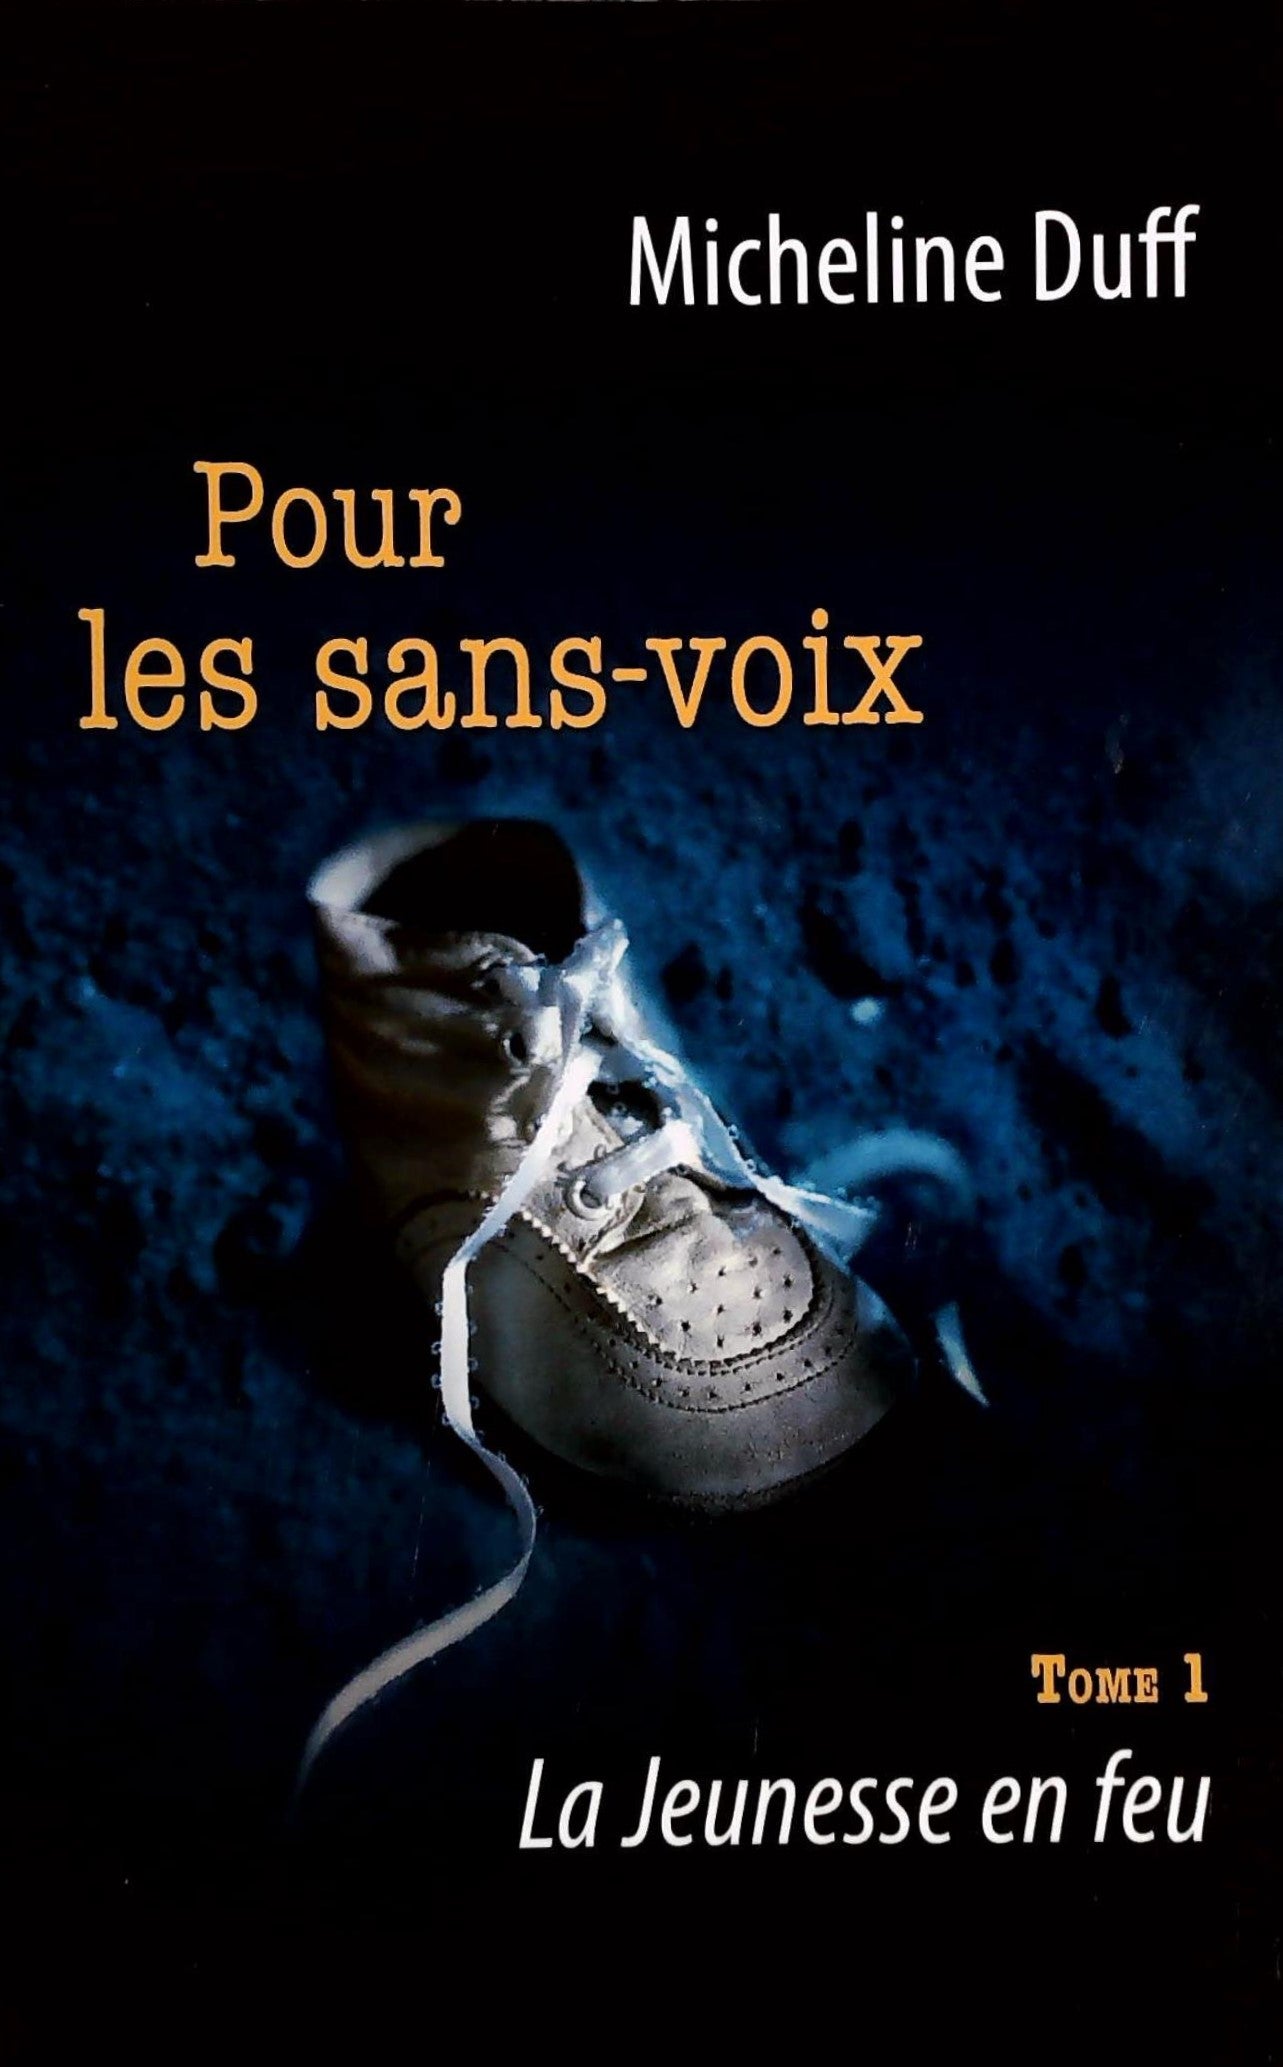 Livre ISBN  Pour les sans-voix # 1 : La jeunesse en feu (Micheline Duff)